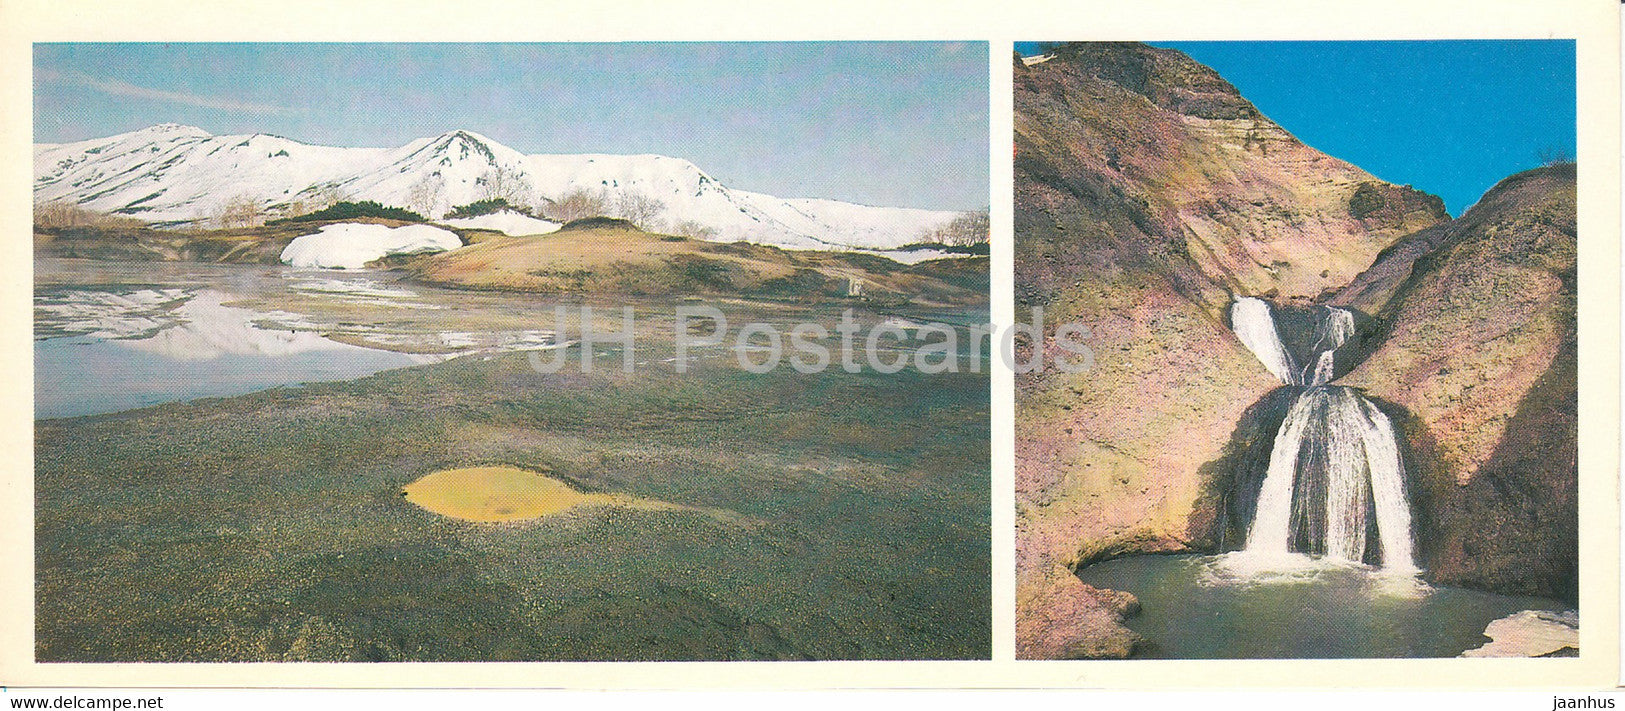 Kamchatka - Troinoy waterfall - upper rivers of Geysernaya - 1981 - Russia USSR - unused - JH Postcards